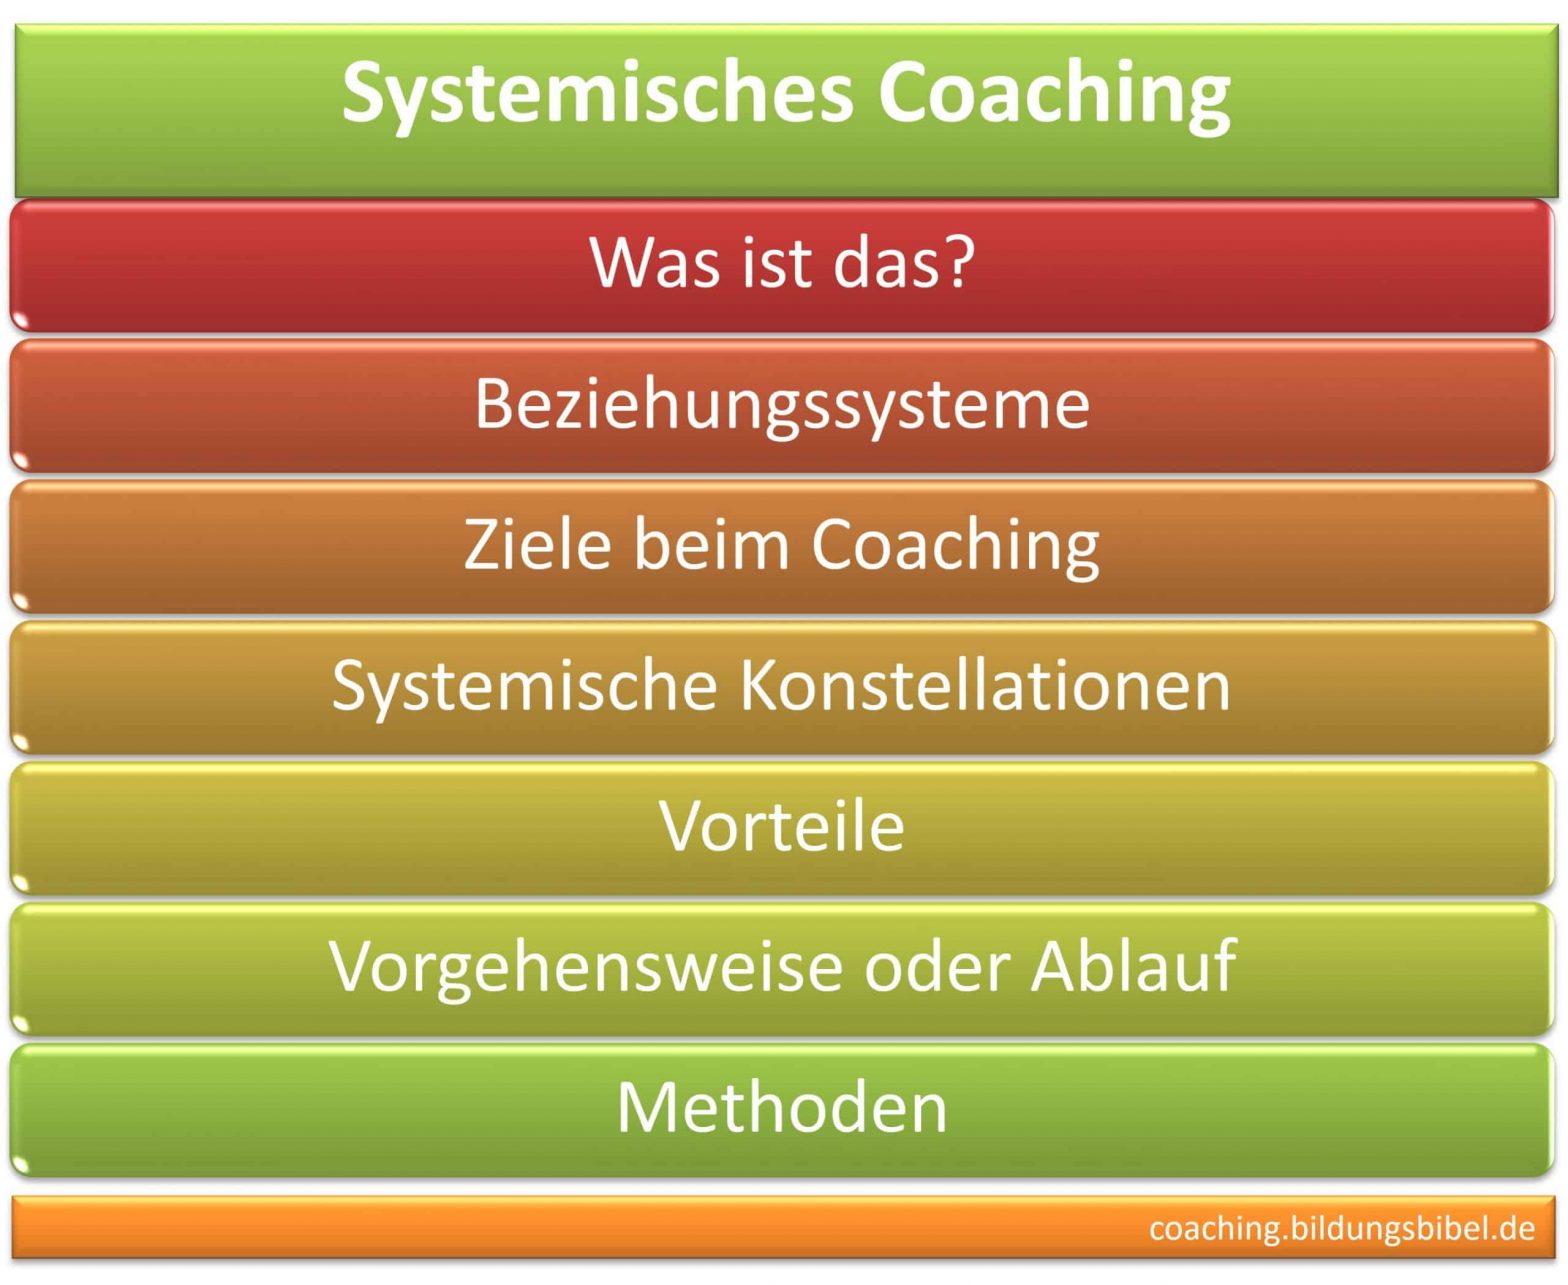 Systemisches Coaching, Coach, Definition, Einführung, Ziele, Konstellationen, Vorteile, Vorgehensweise, Ablauf, Beziehungssysteme.